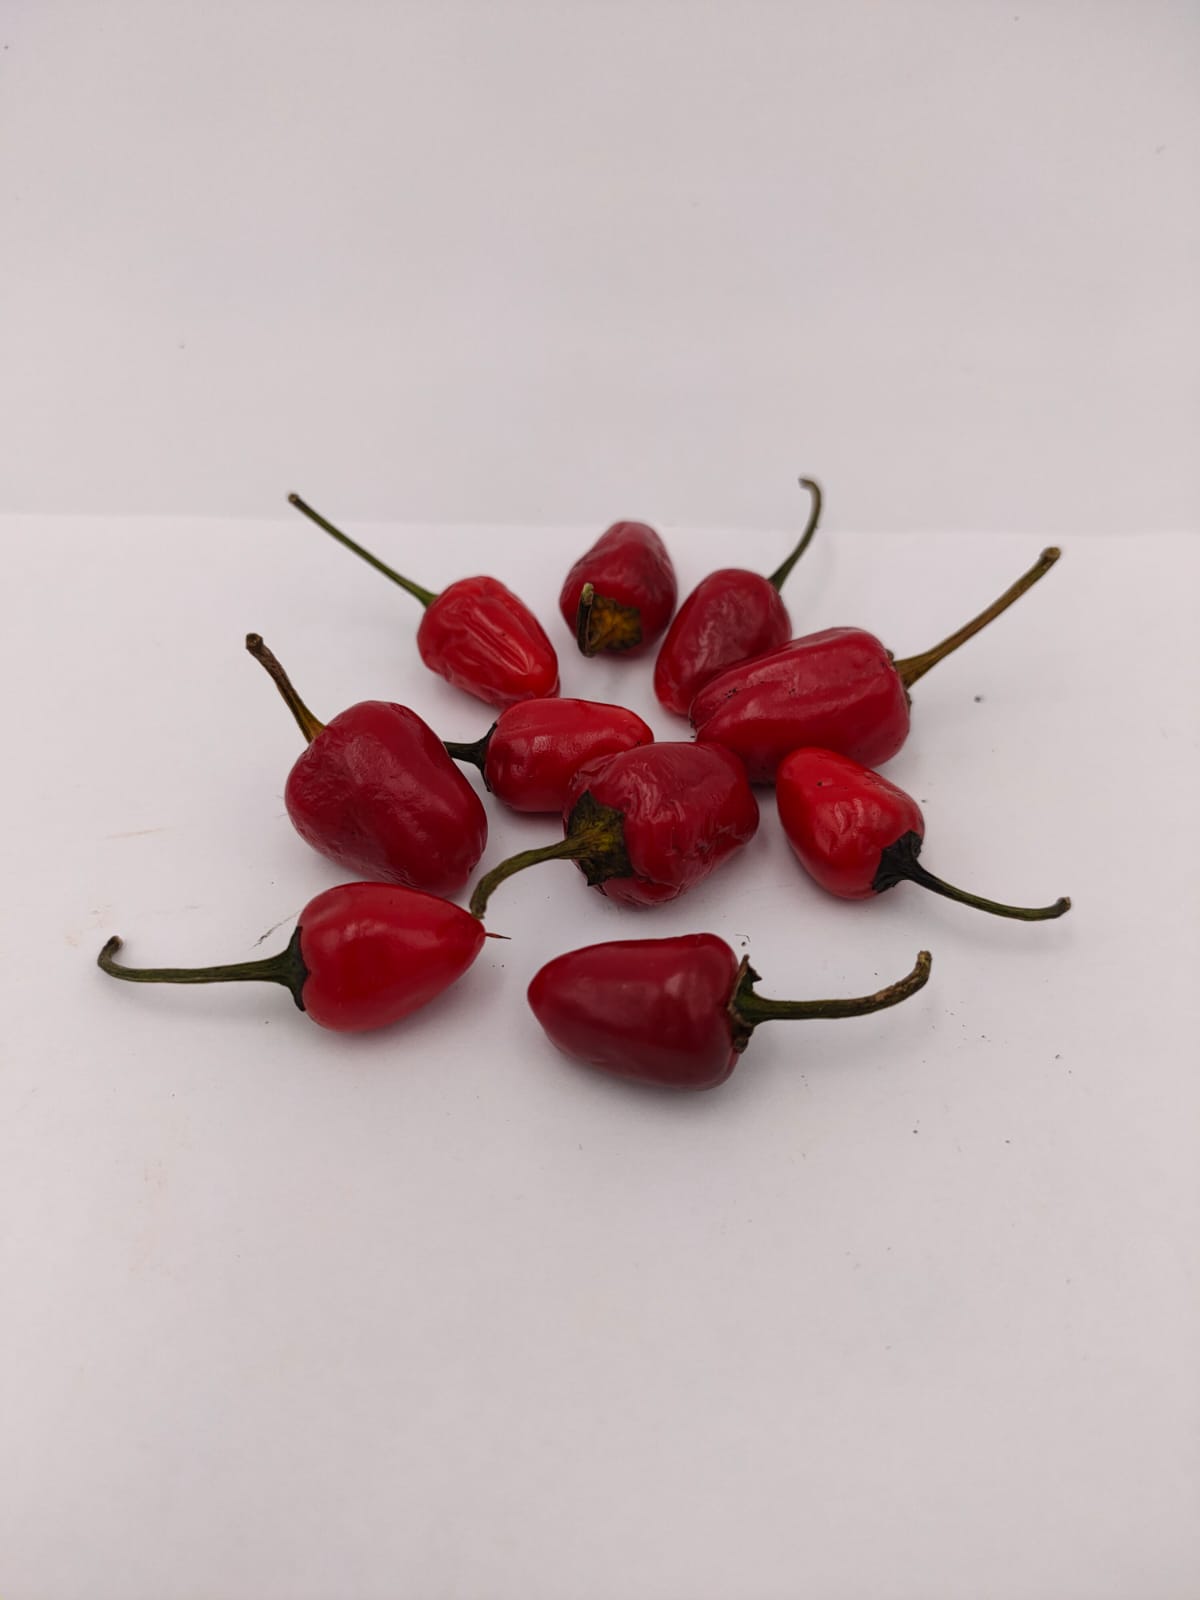 Chile Costa Rica rojo - 10 semillas de chile